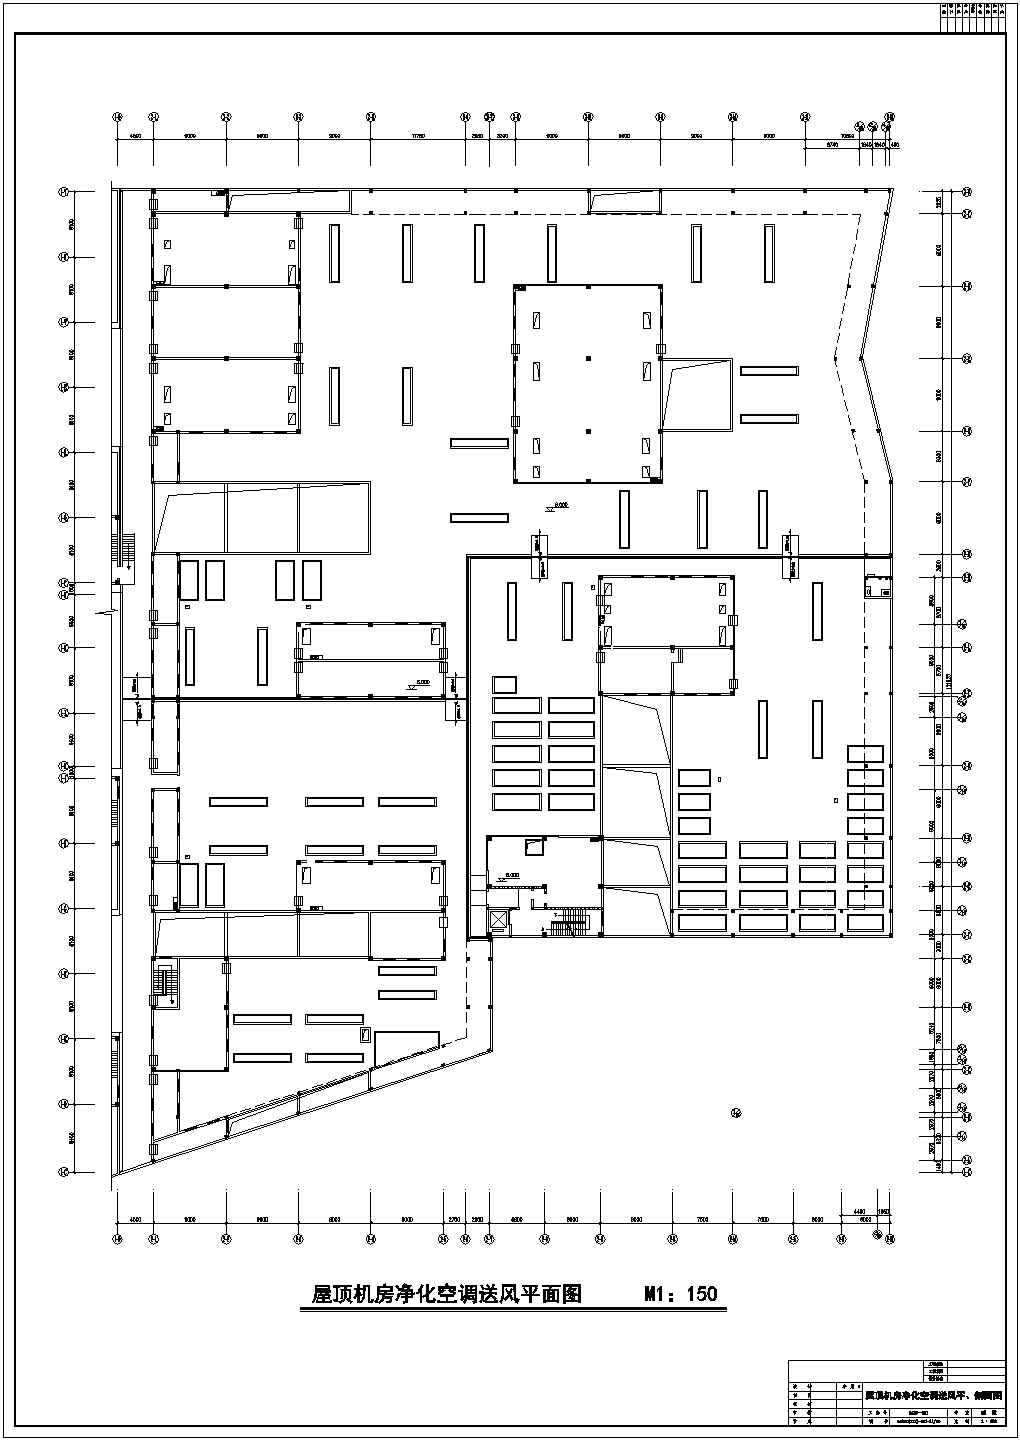 【四川】某2层综合生产厂房洁净空调系统设计施工图